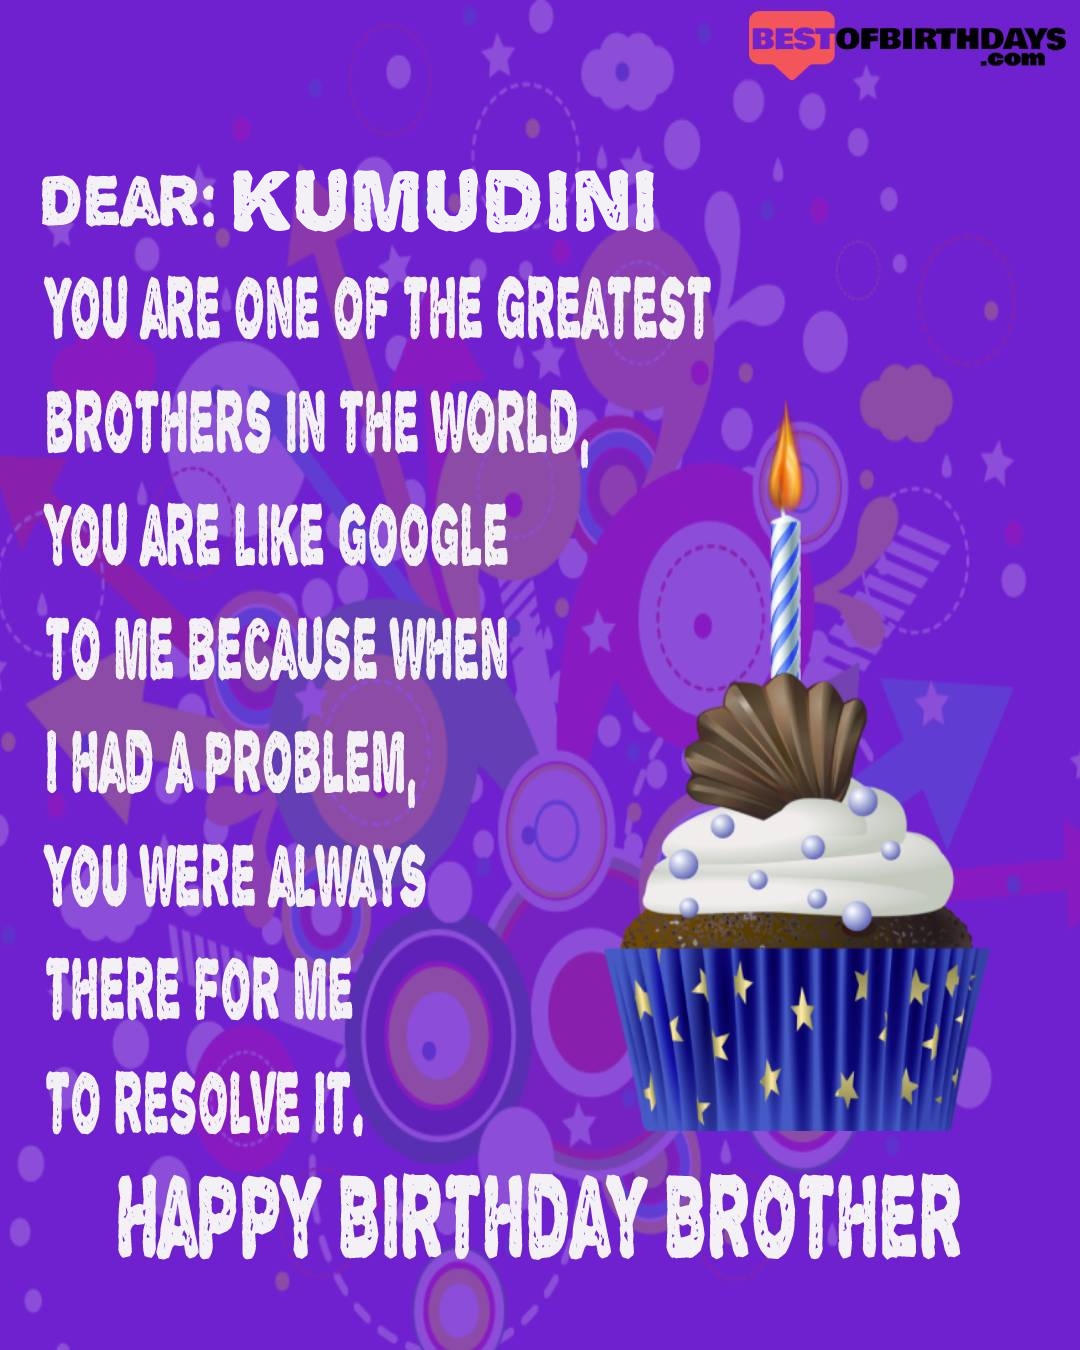 Happy birthday kumudini bhai brother bro